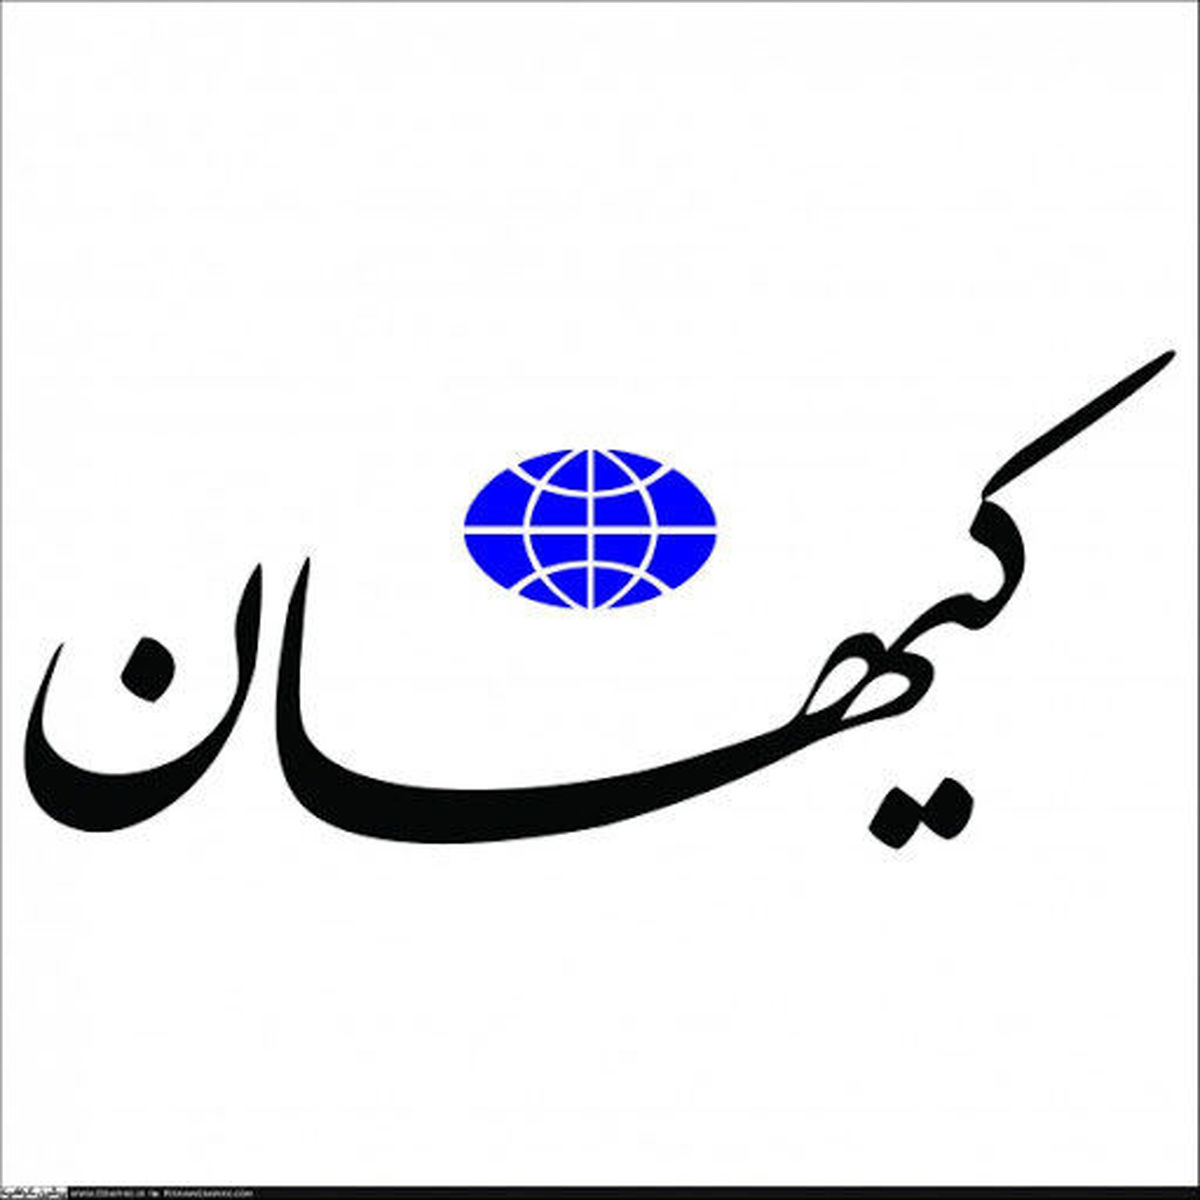 کیهان: دشمن روی سلبریتی های وطن فروش حساب کرده است